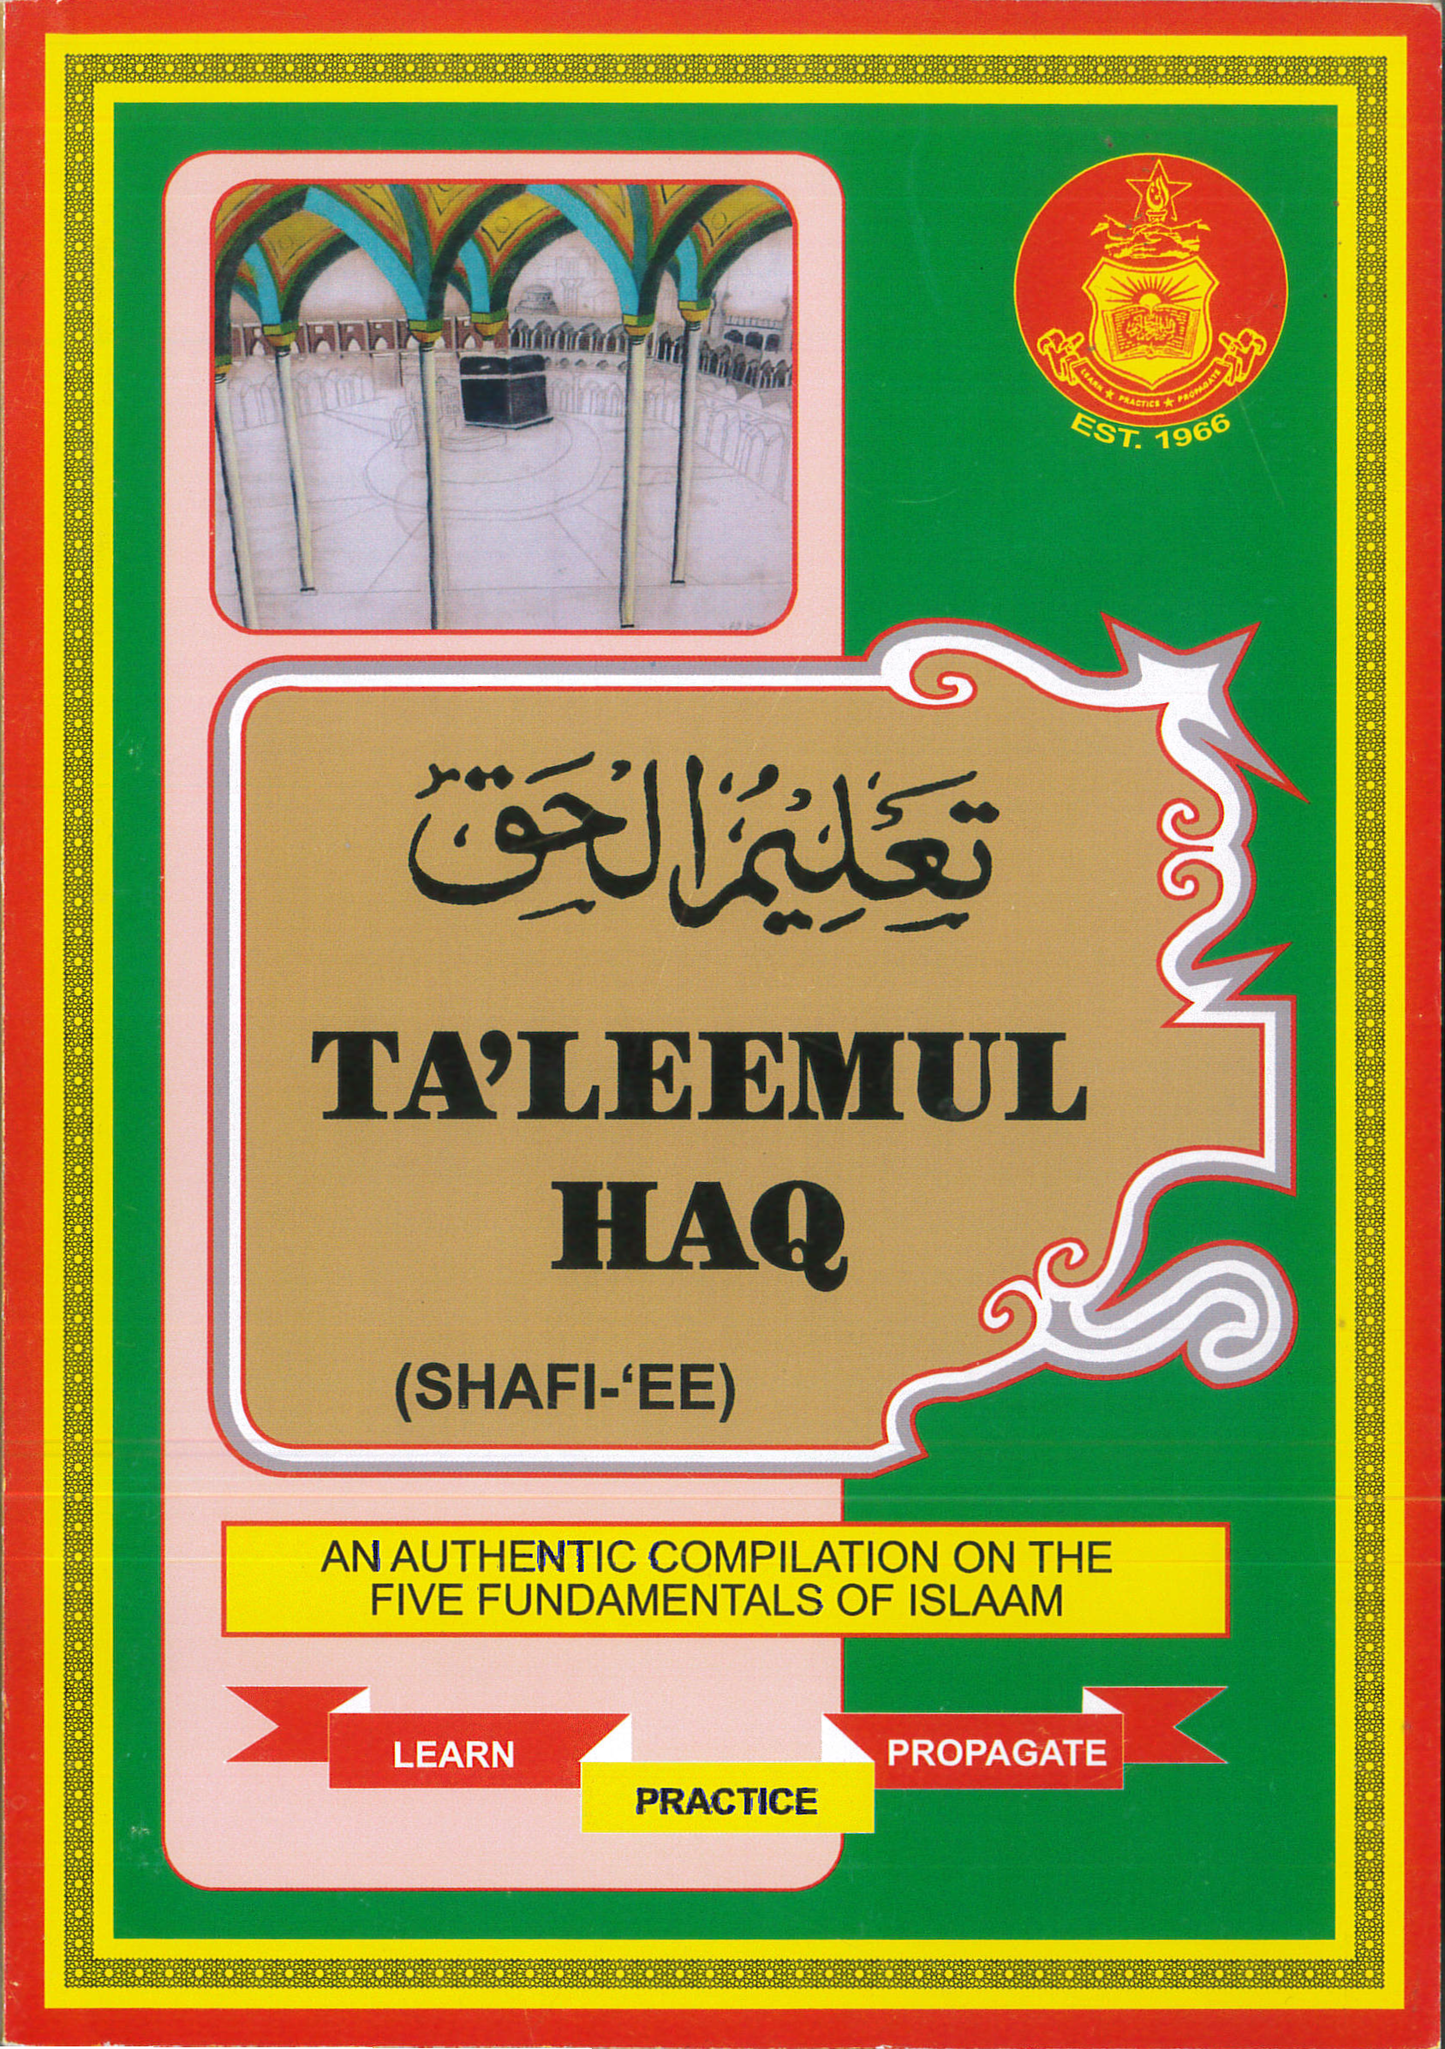 Taleemul Haq (Shafi-ee)